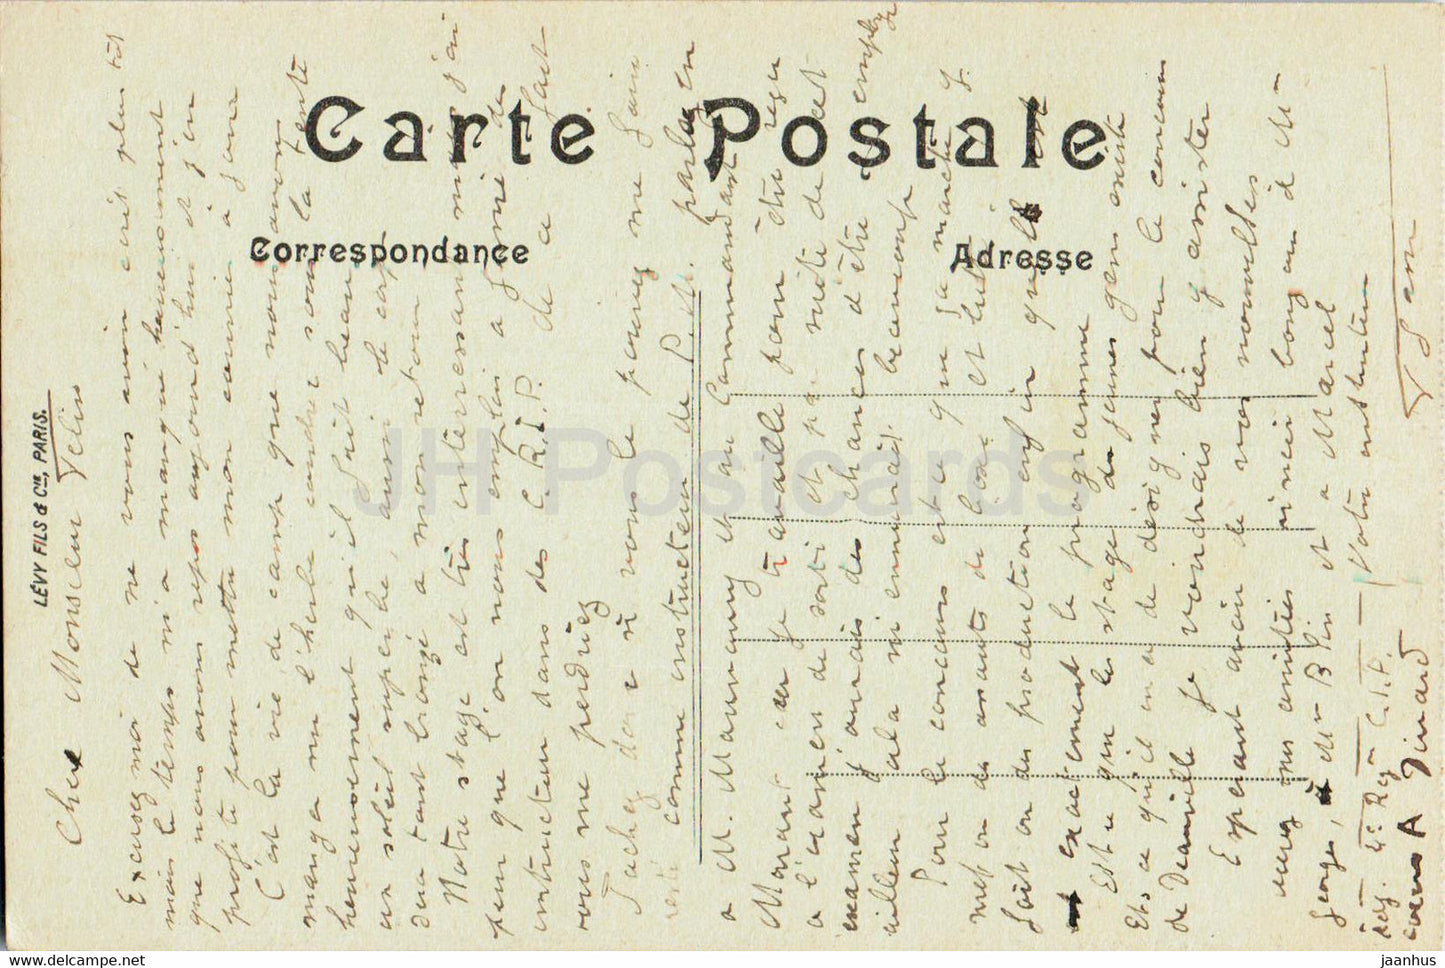 Dinard - La Malouine - 1 - old postcard - France - used